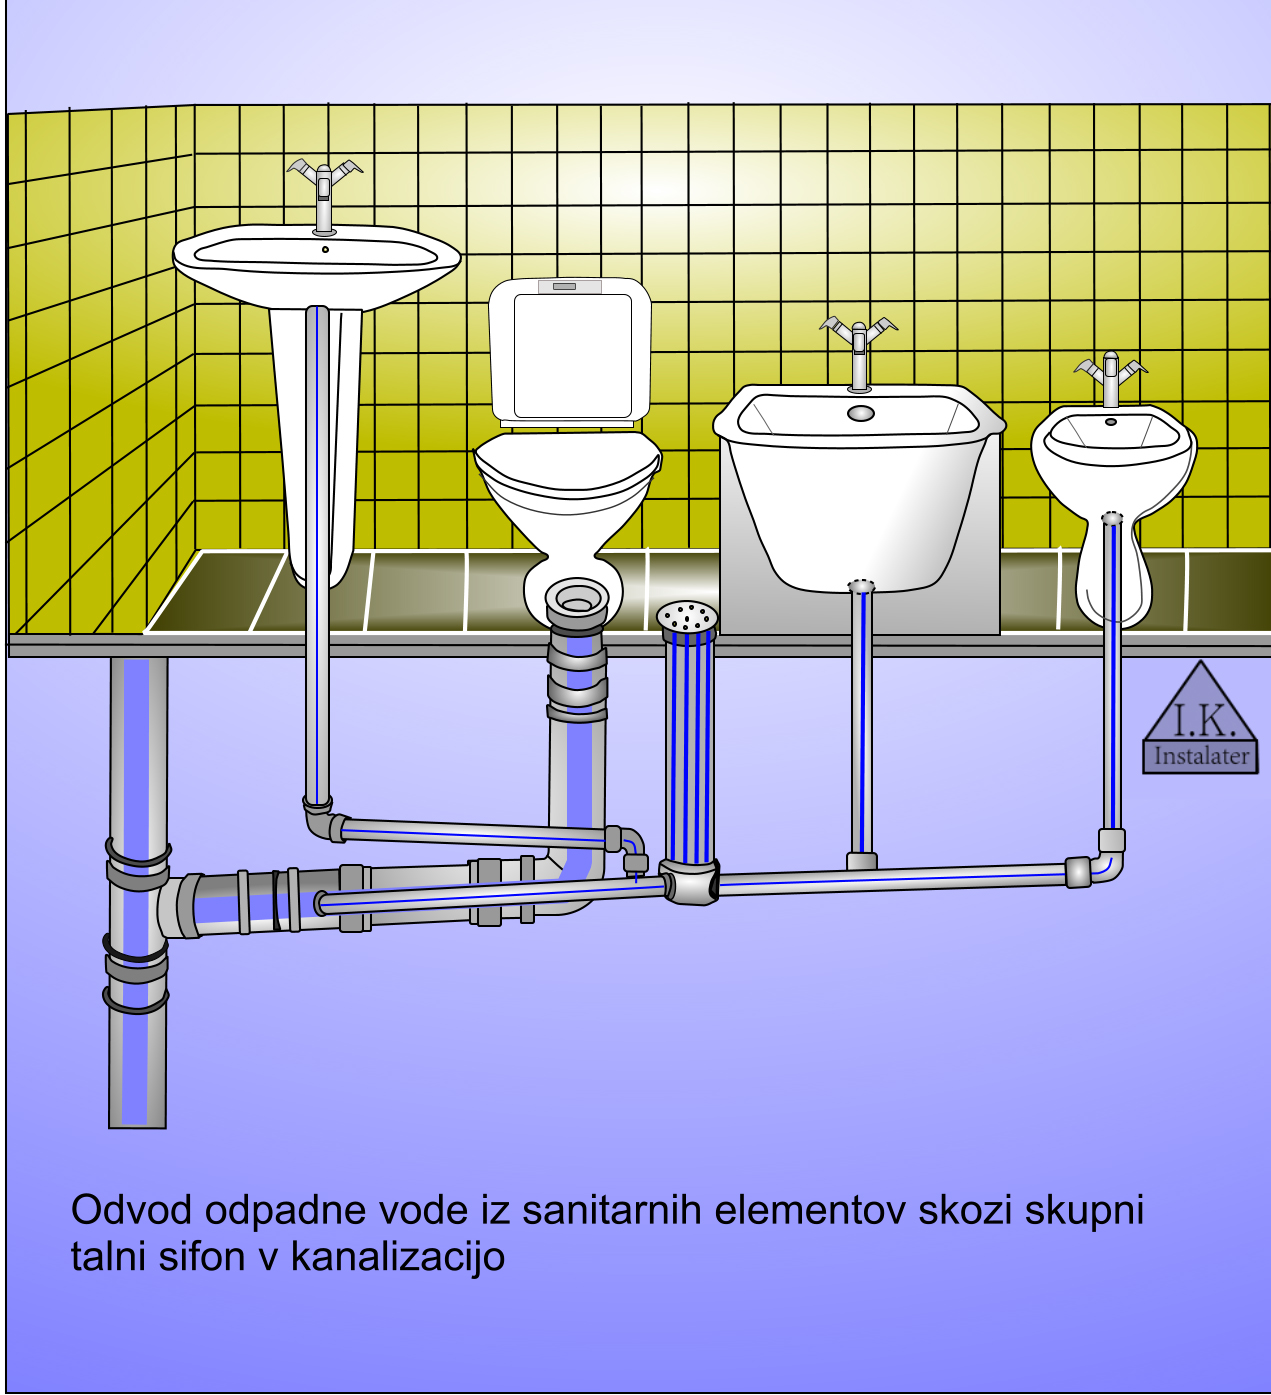 2-Odvod odpadne vode iz sanitarnih elementov skozi skupni v kanalizacijo 2